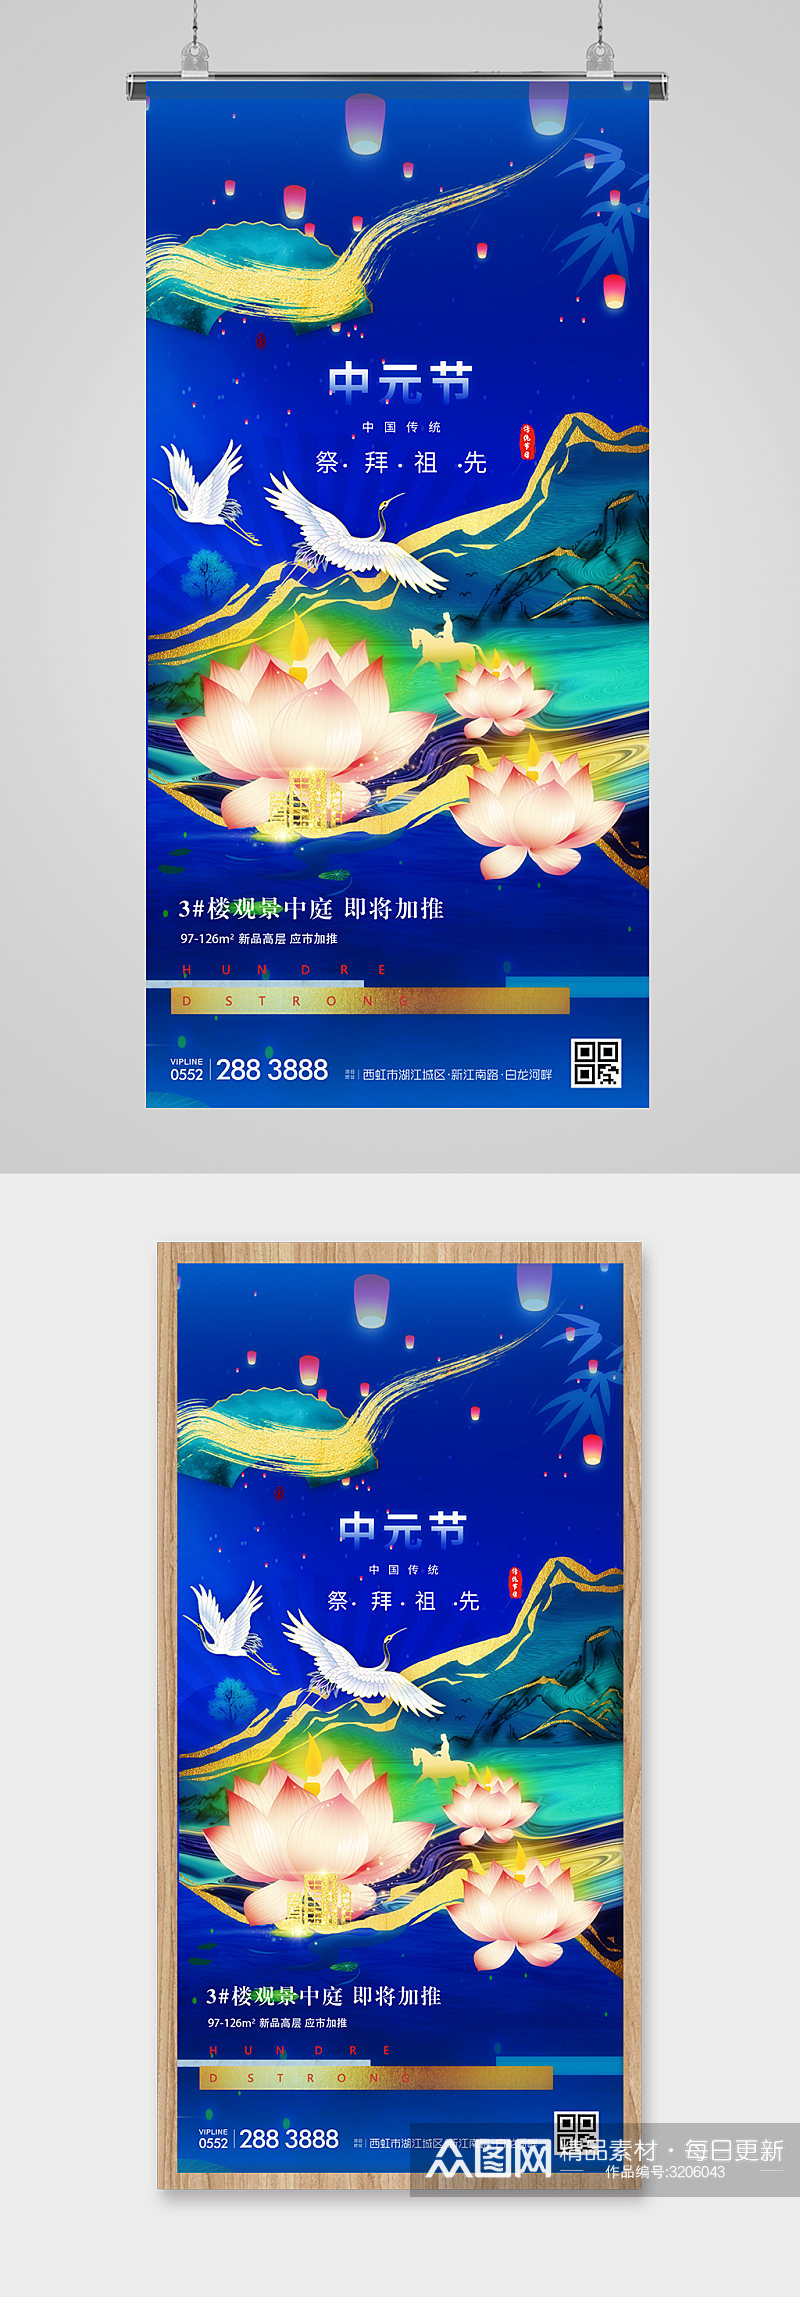 中元节鎏金意境地产海报素材